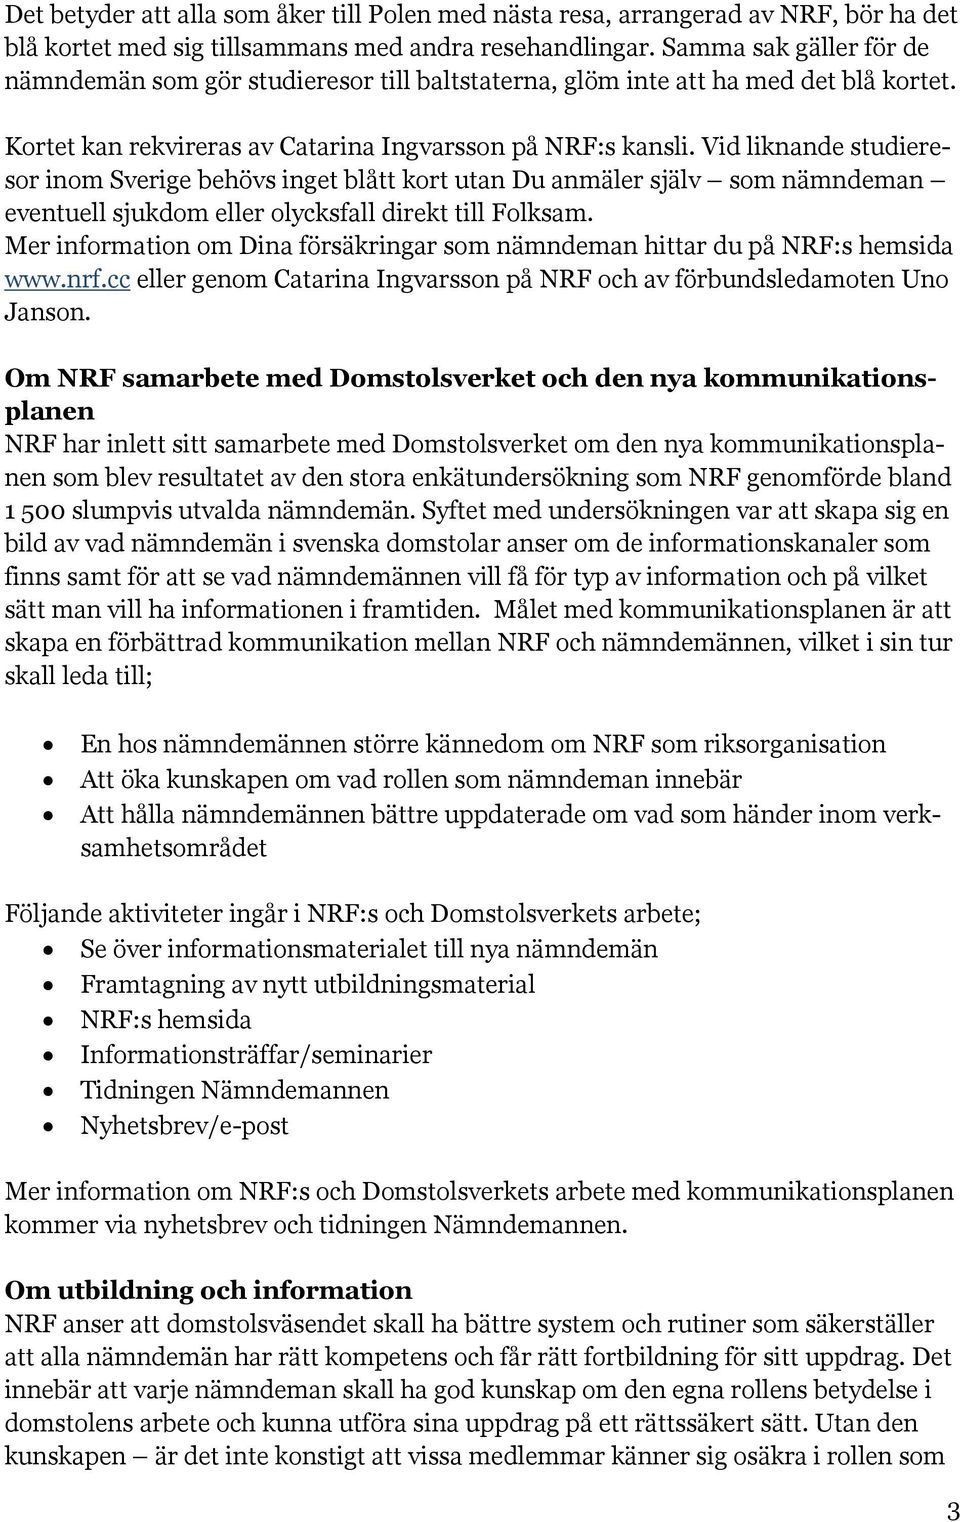 Vid liknande studieresor inom Sverige behövs inget blått kort utan Du anmäler själv som nämndeman eventuell sjukdom eller olycksfall direkt till Folksam.